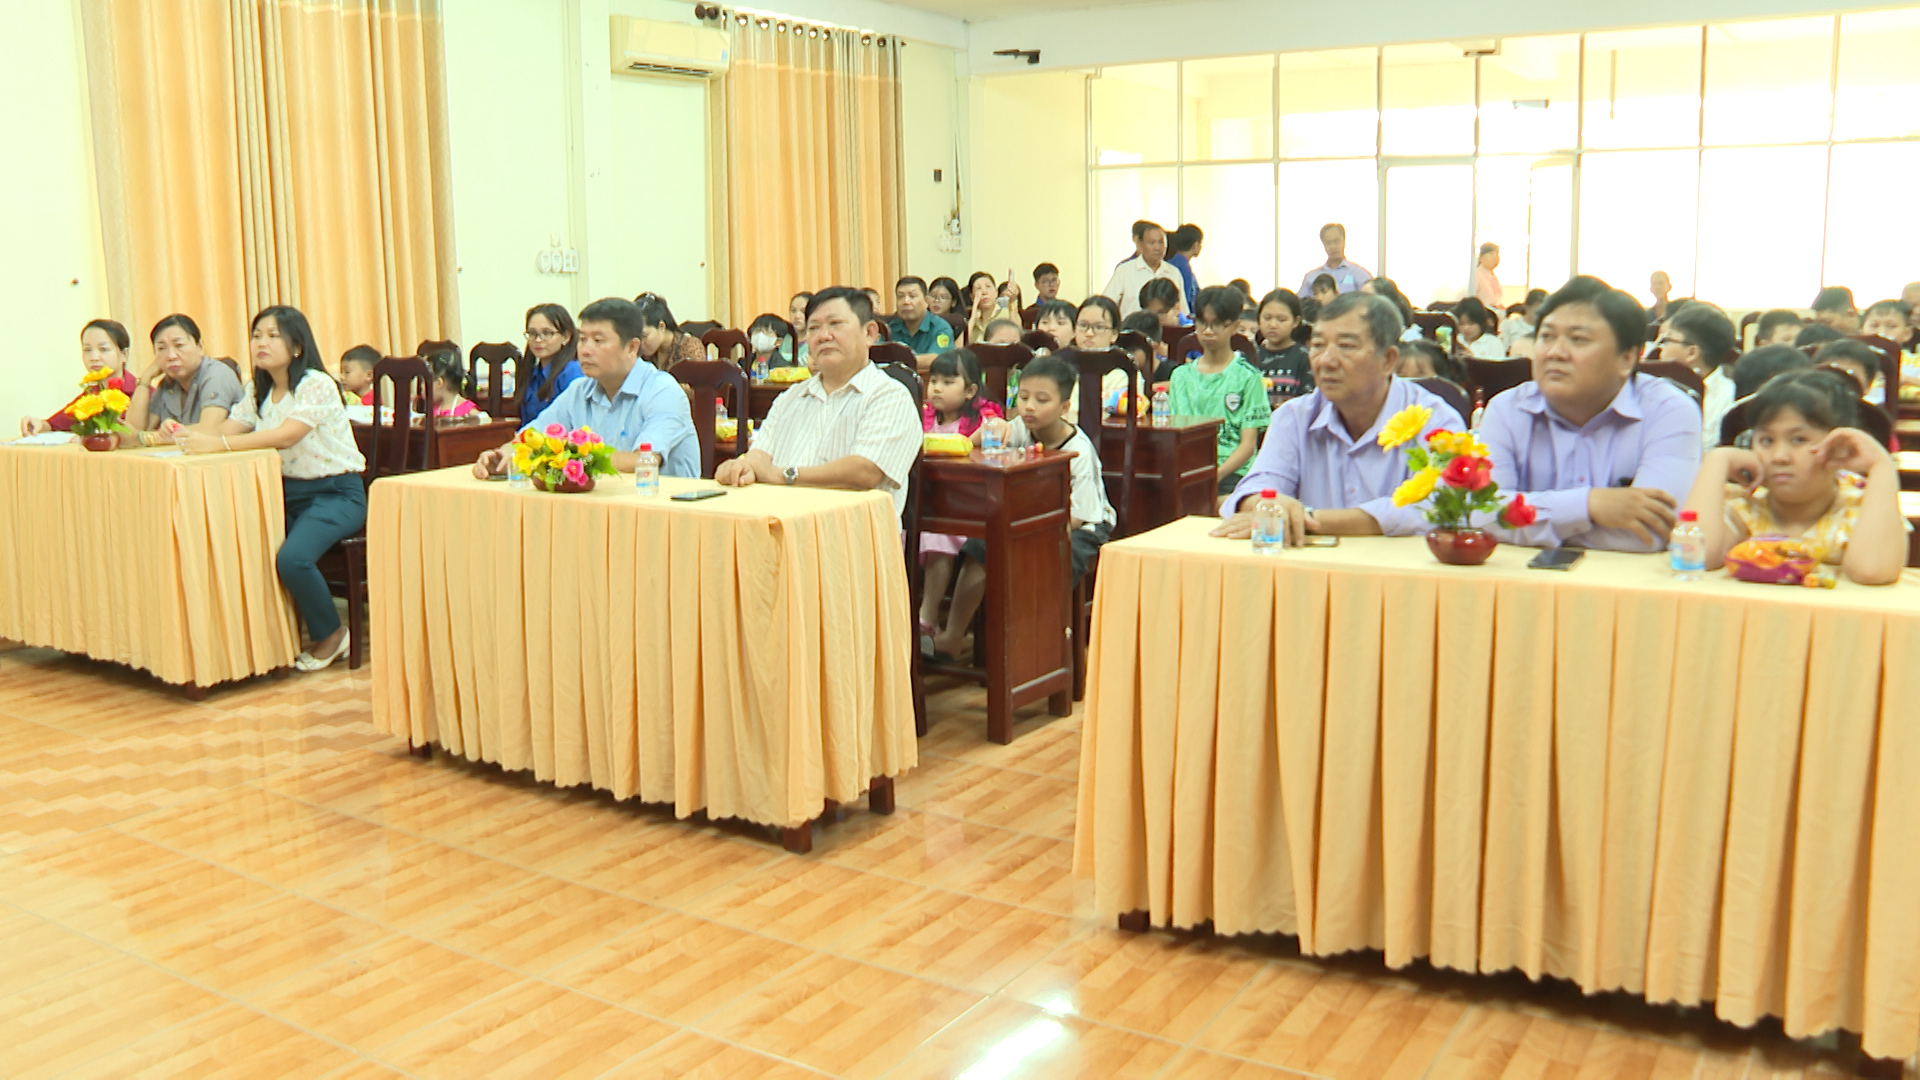 Hình 2: Đại biểu, các em thiếu nhi tham dự buổi họp mặt nhân ngày Quốc tế Thiếu nhi 1/6, do UBND phường An Phú tổ chức